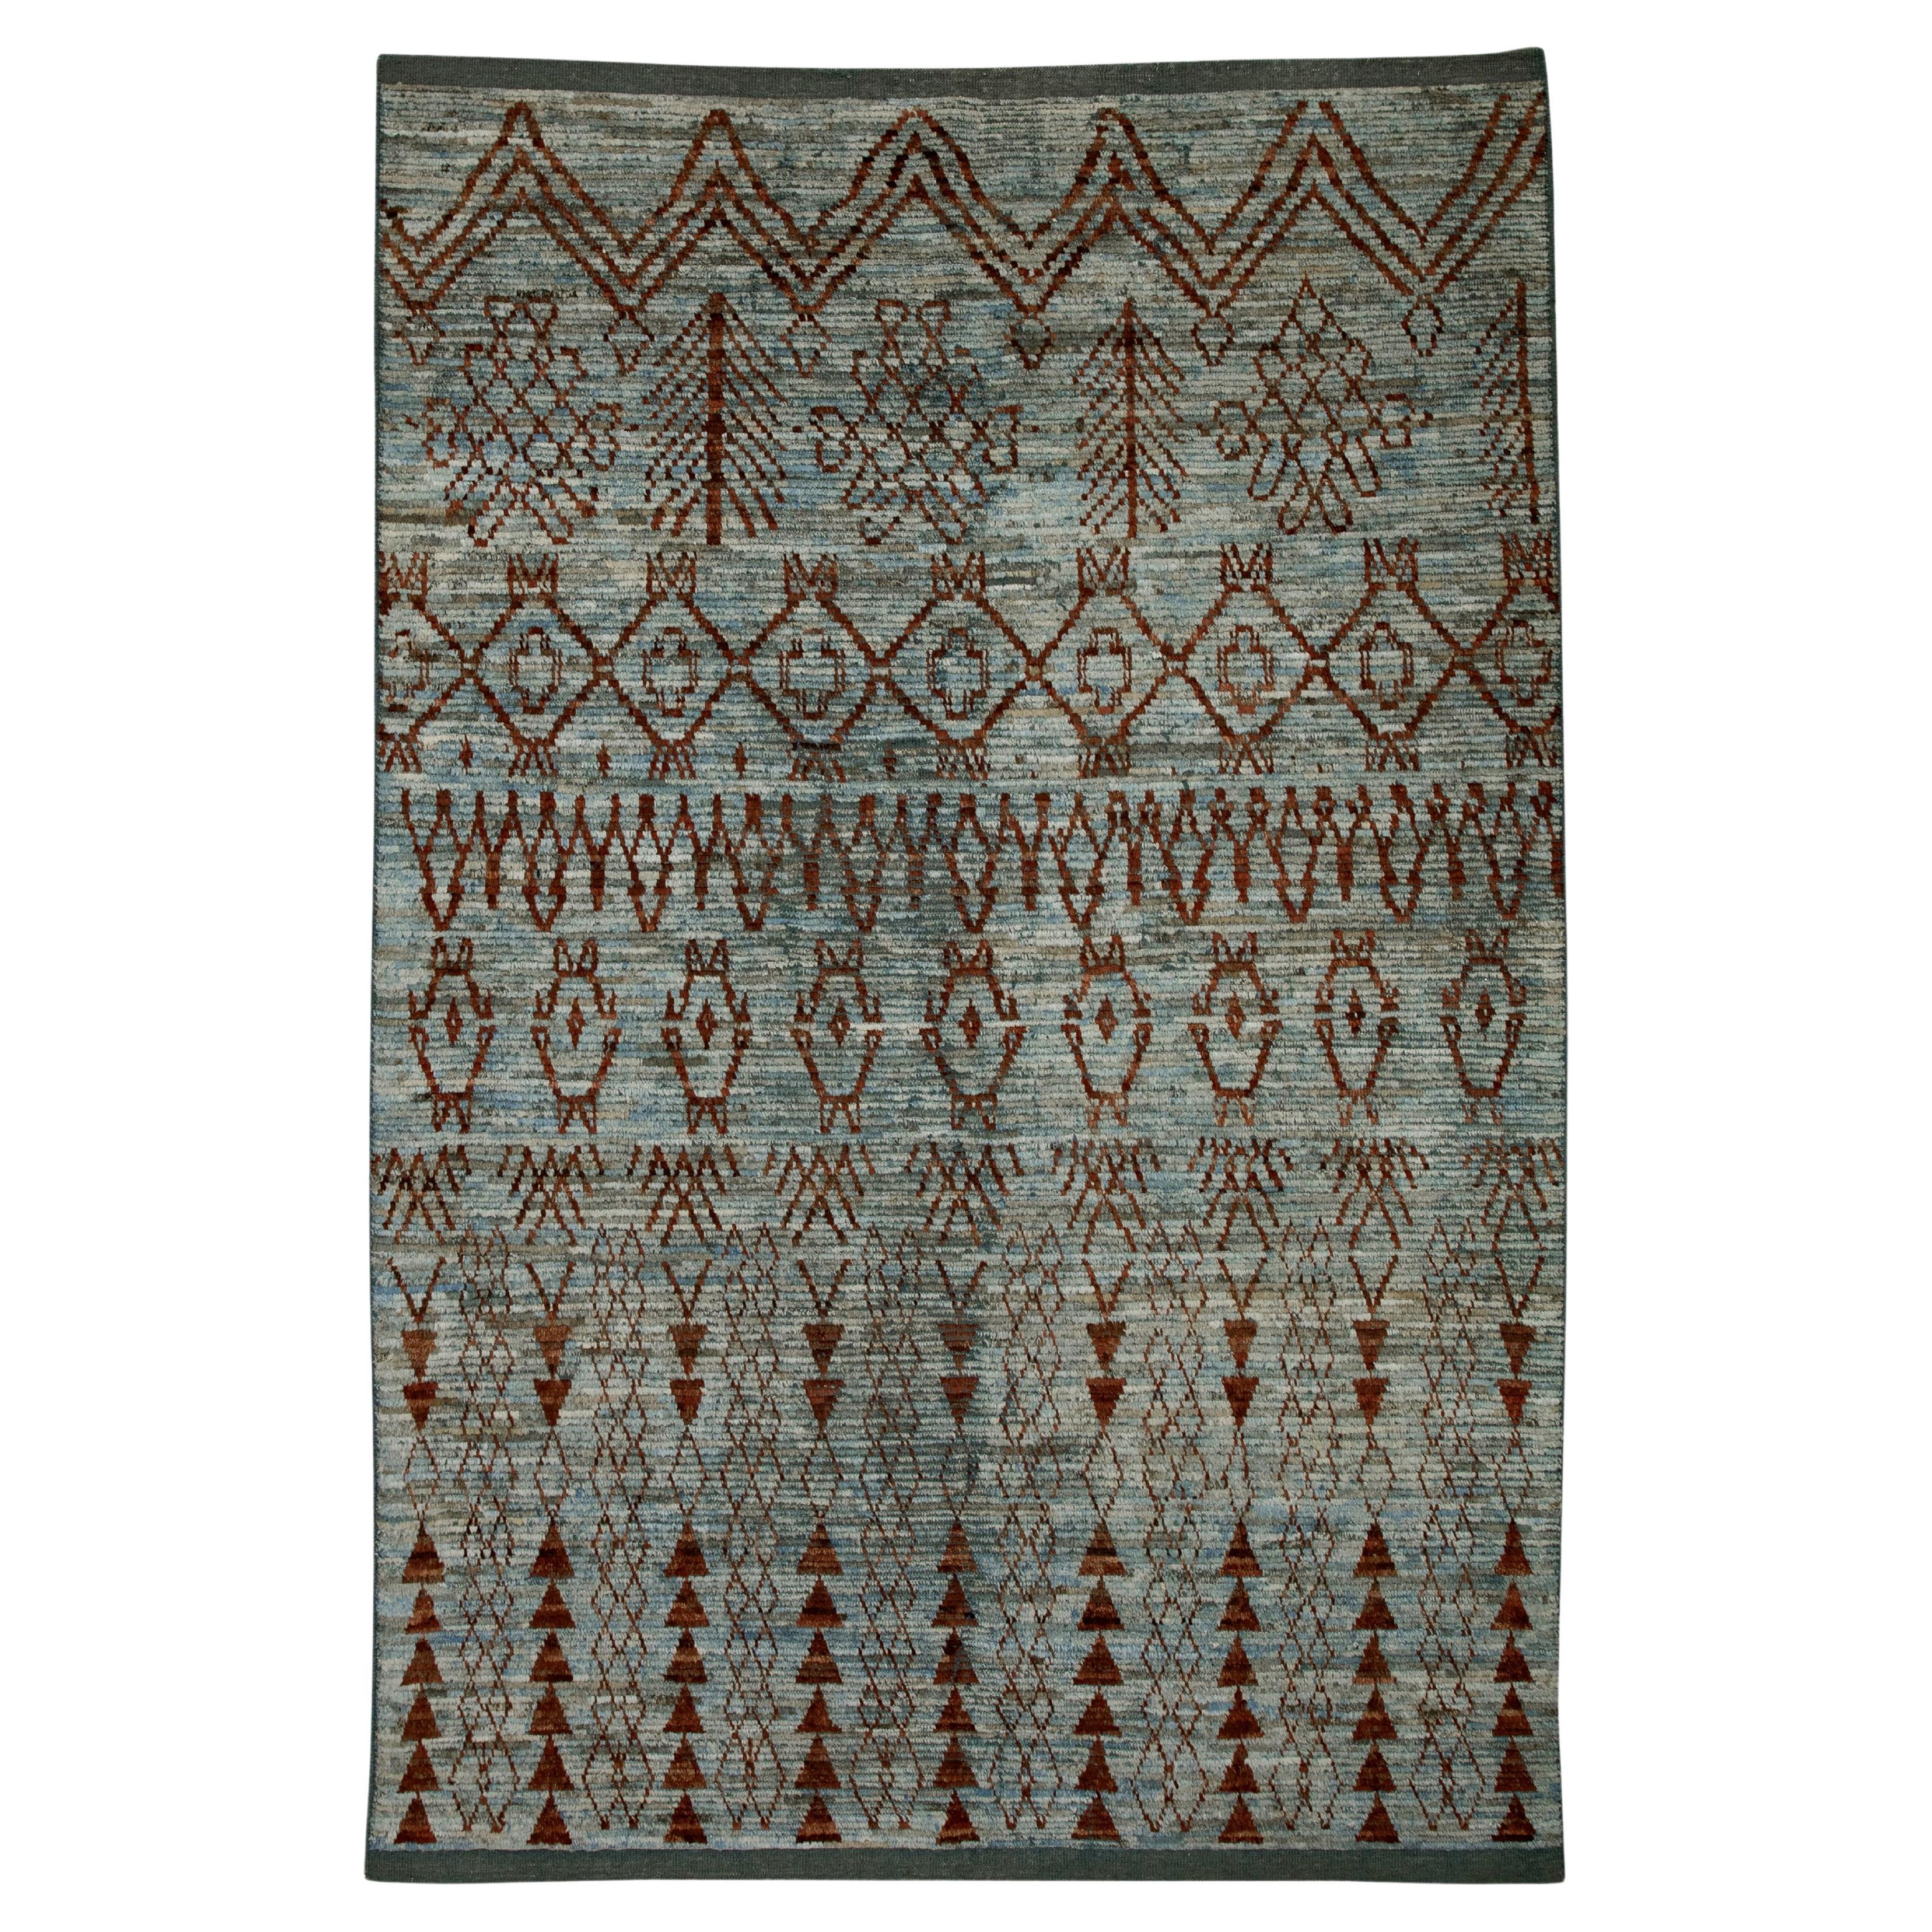 Handgefertigter moderner türkischer Teppich aus Wolle in Rot & Blau in geometrischem Design 6'2" x 9'5"